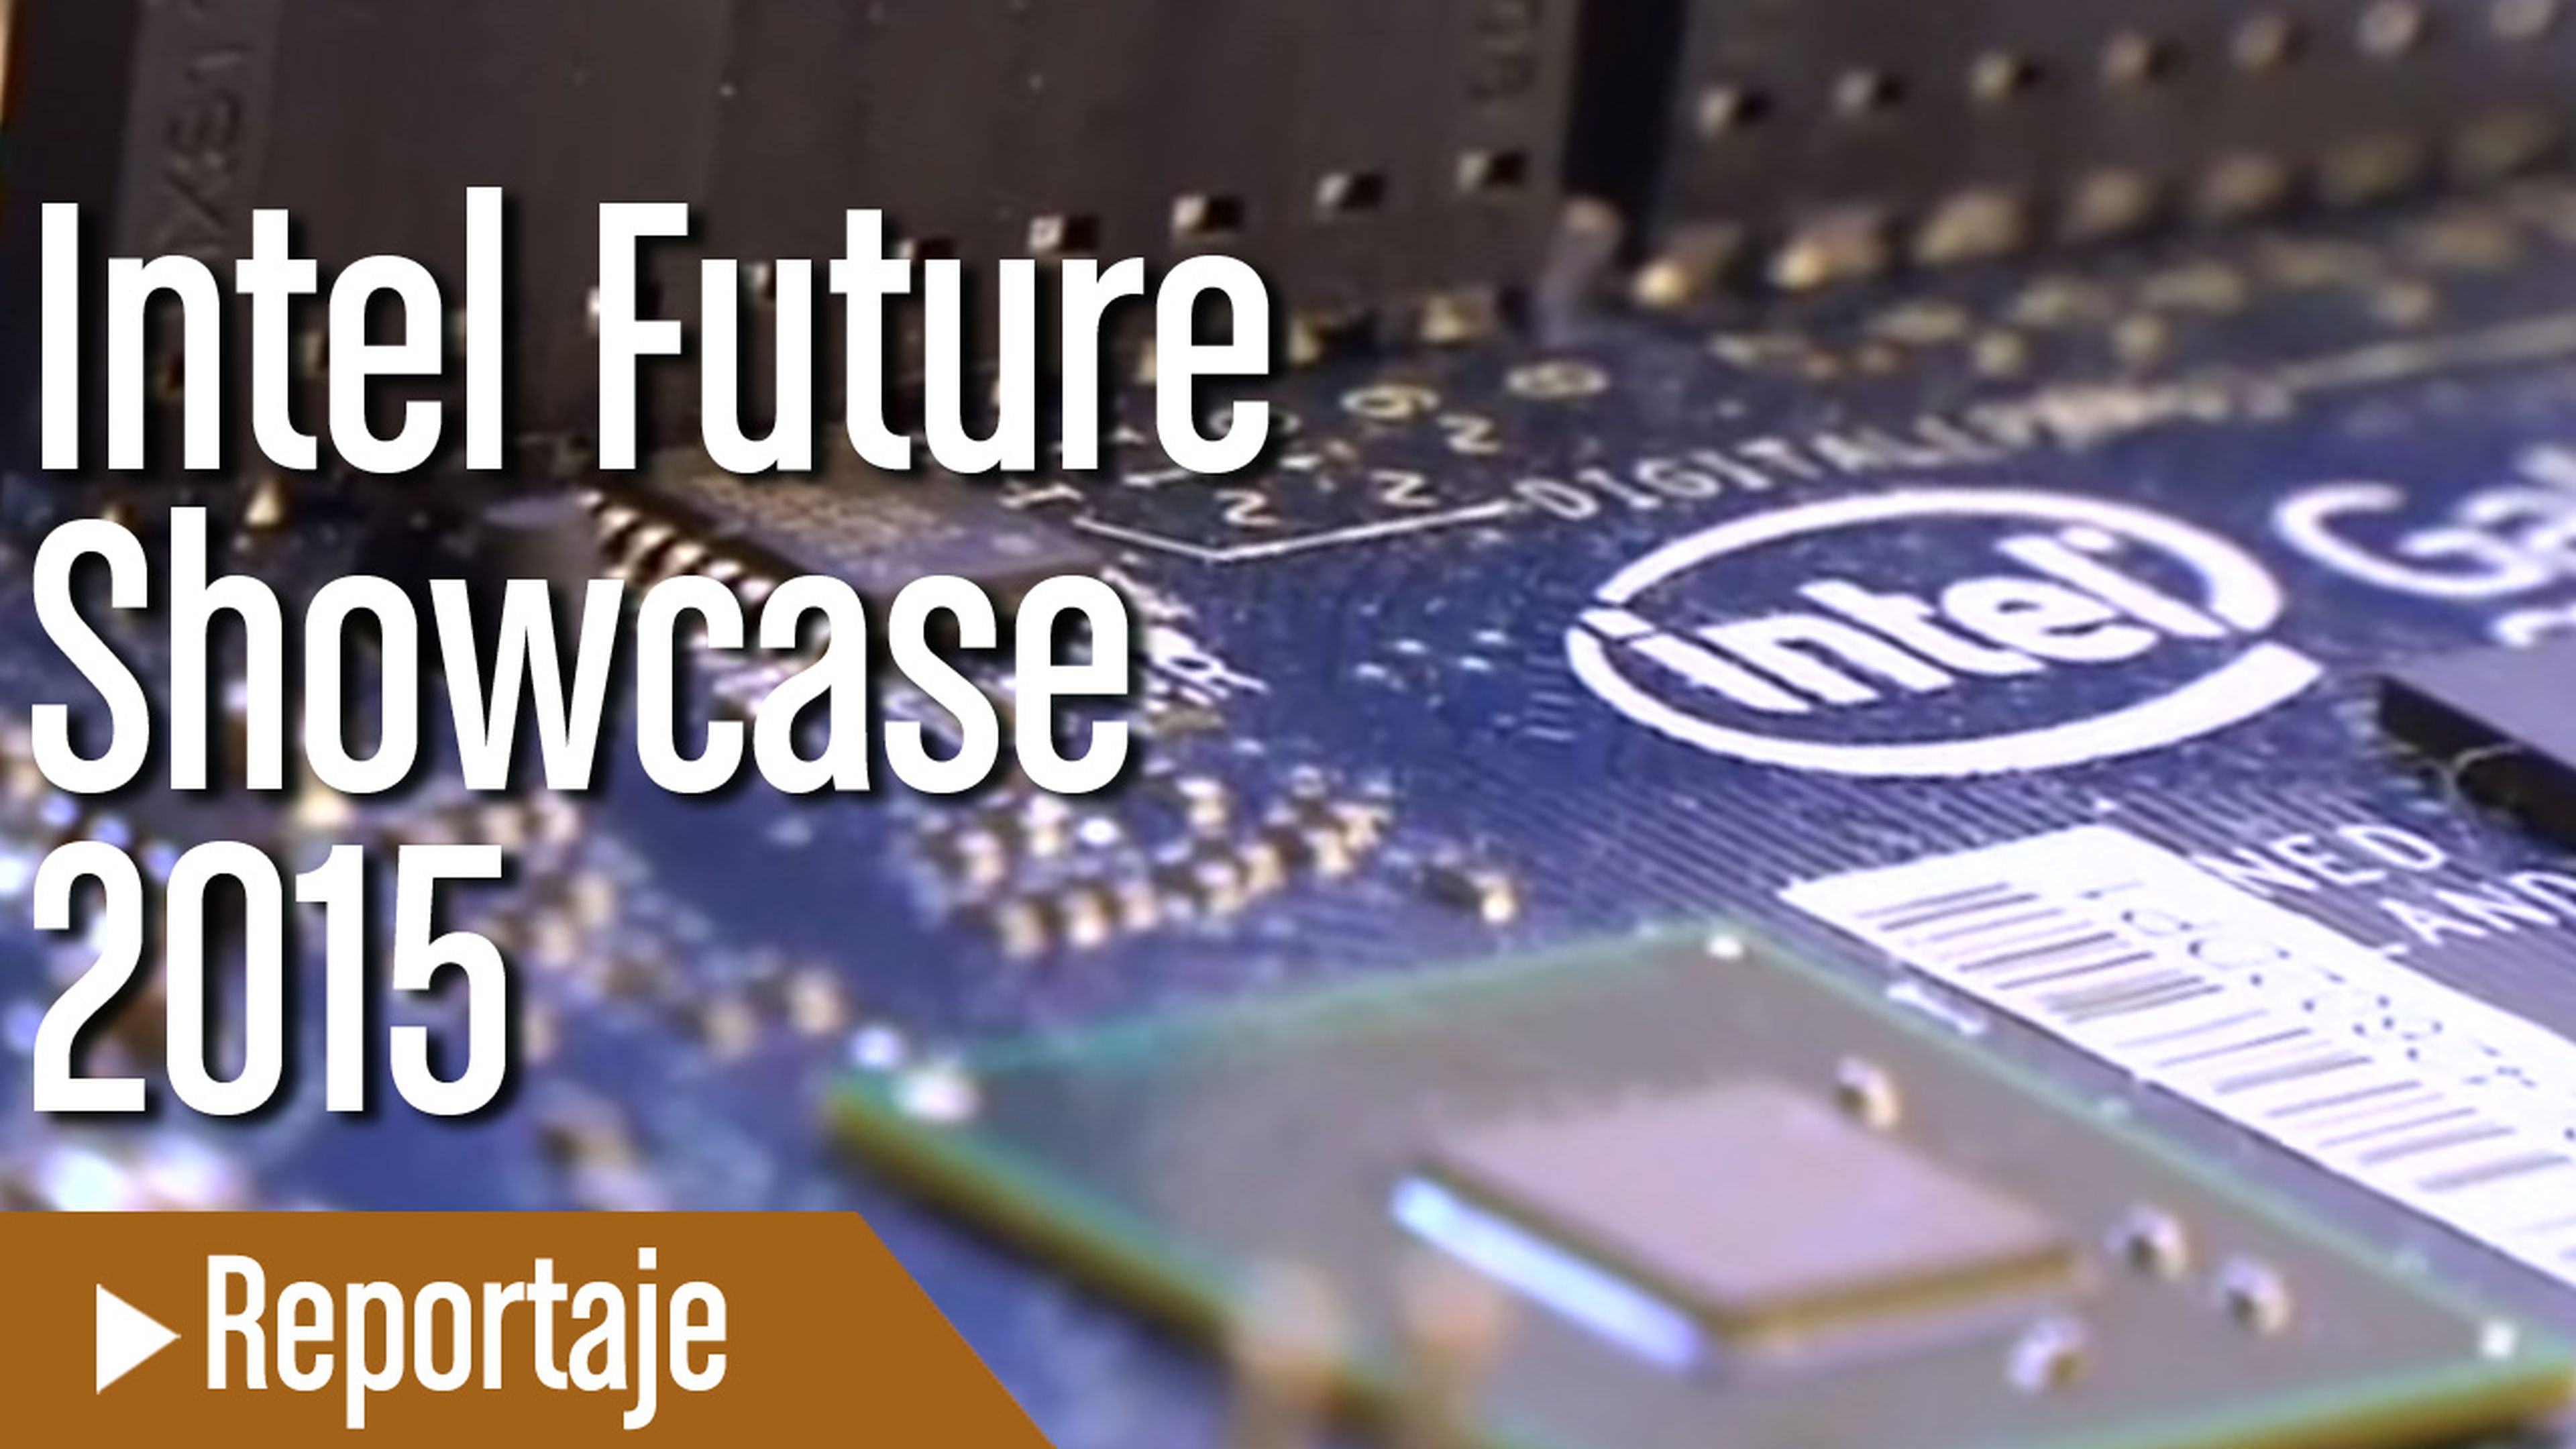 Intel Future Showcase 2015